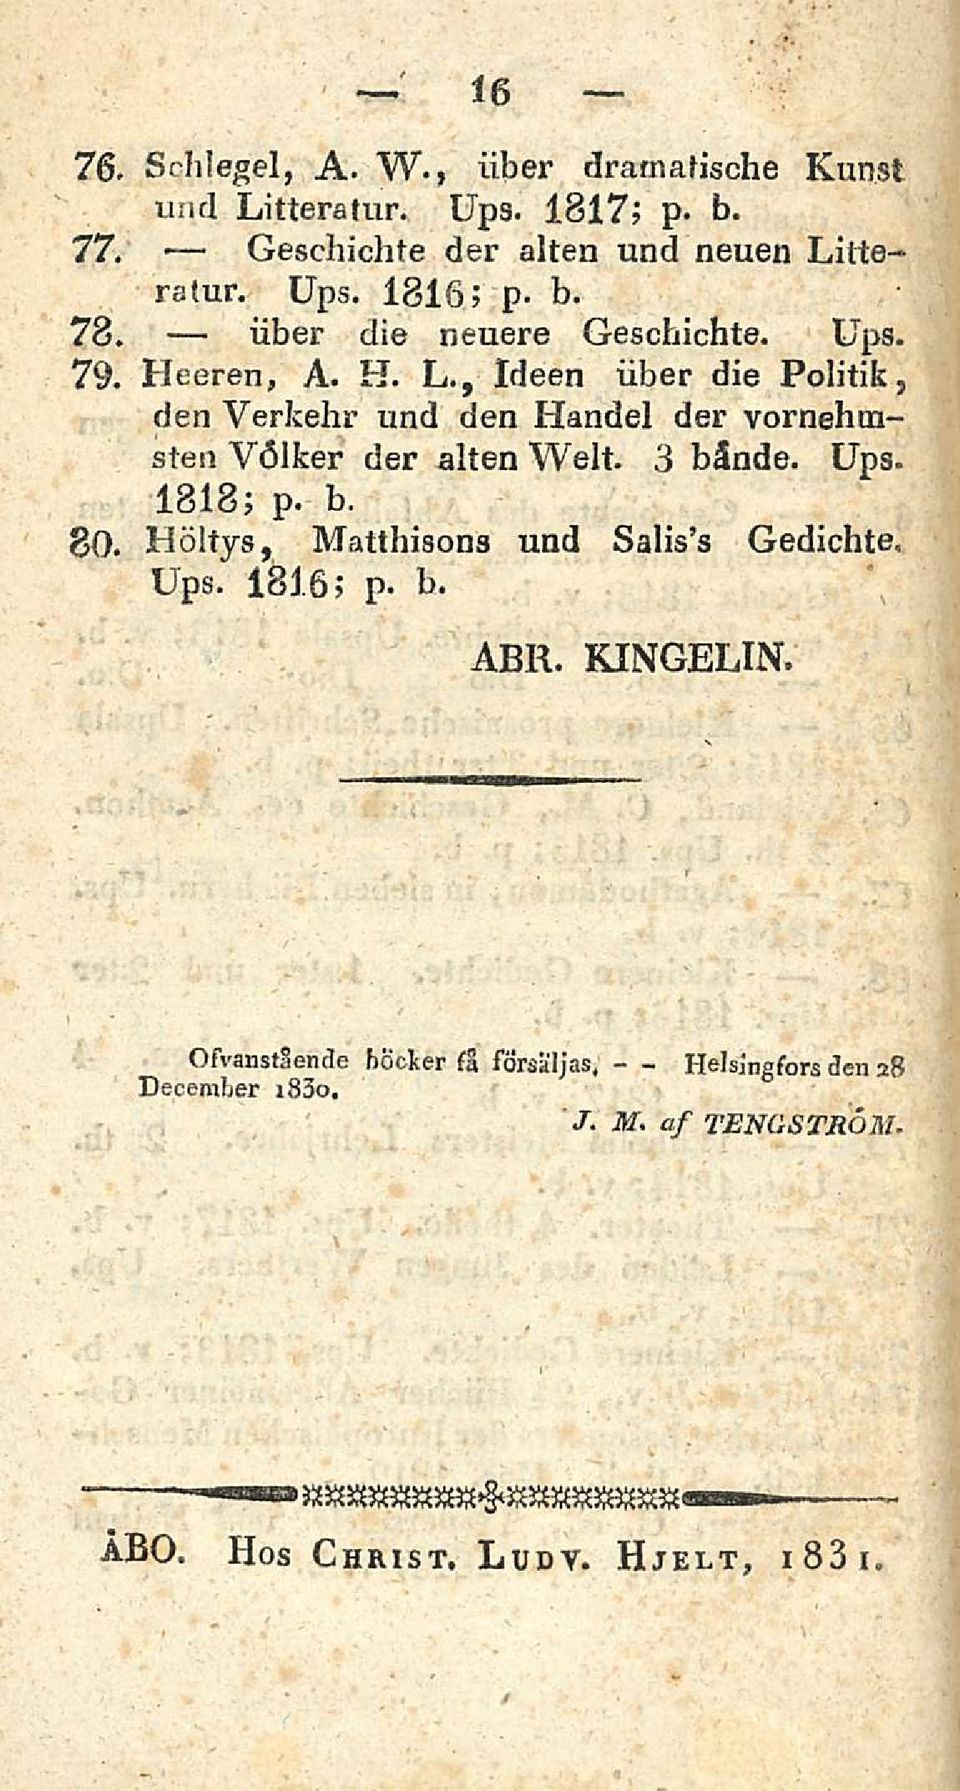 3 bände. Ups. 1818; b. P. 80. Höltys, Matthisons und Salis s Gedichte, Ups. 1816; p. b. ABR. KINGELIN.